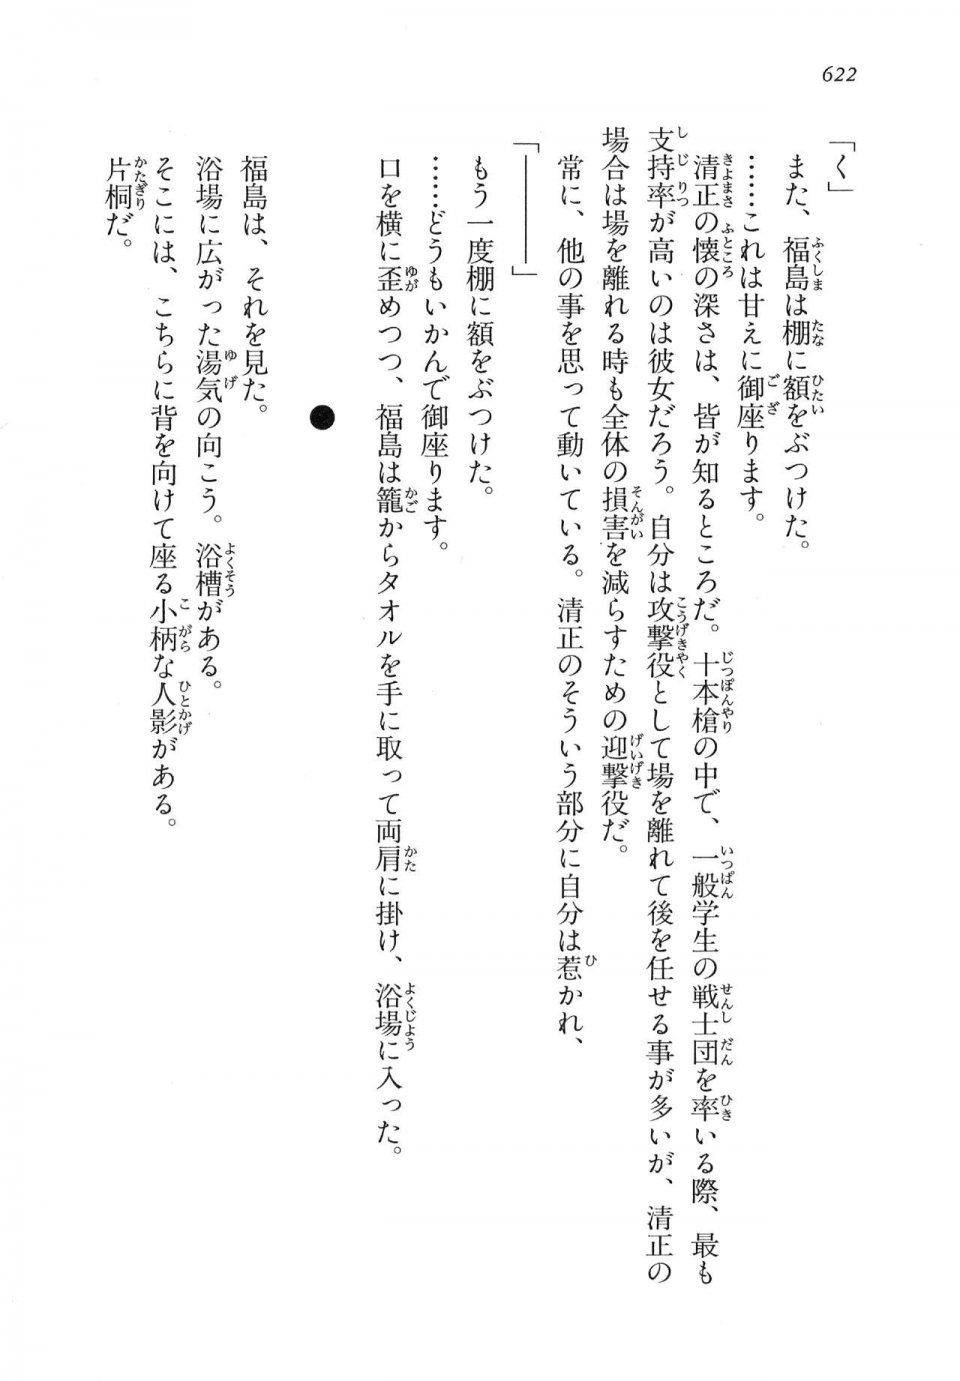 Kyoukai Senjou no Horizon LN Vol 16(7A) - Photo #622